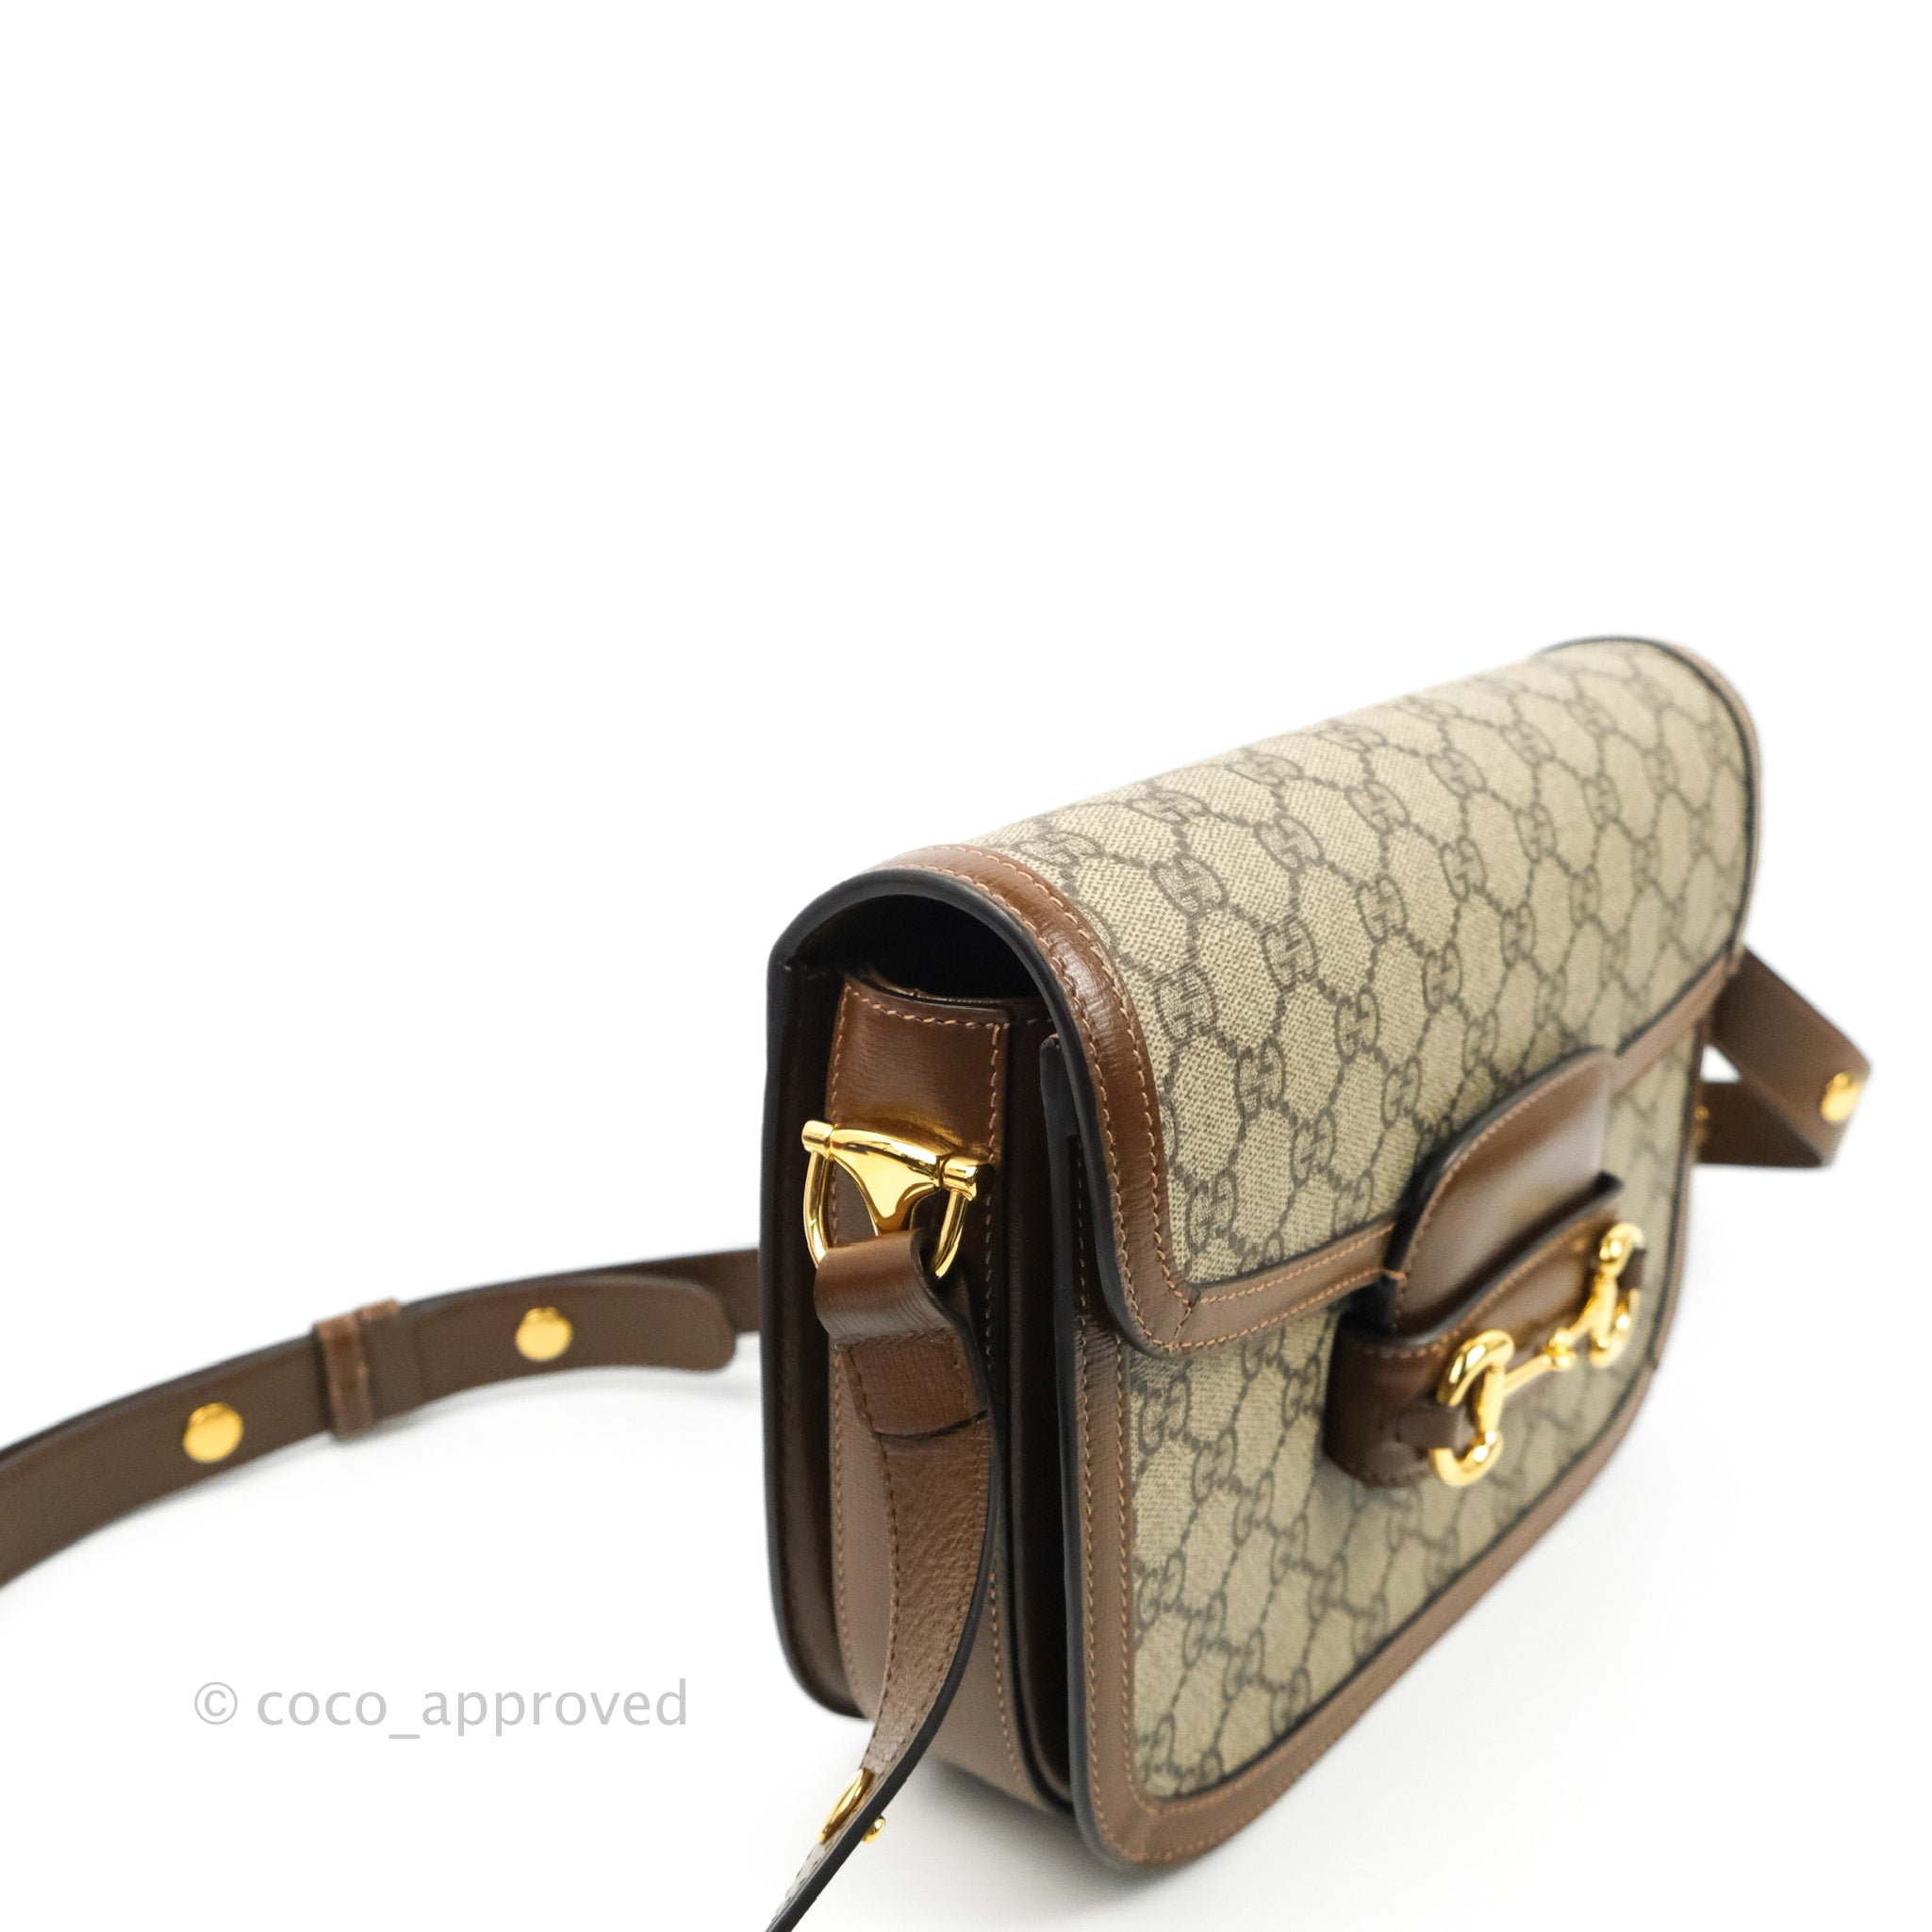 Gucci 1955 Horsebit Shoulder Bag - Brown